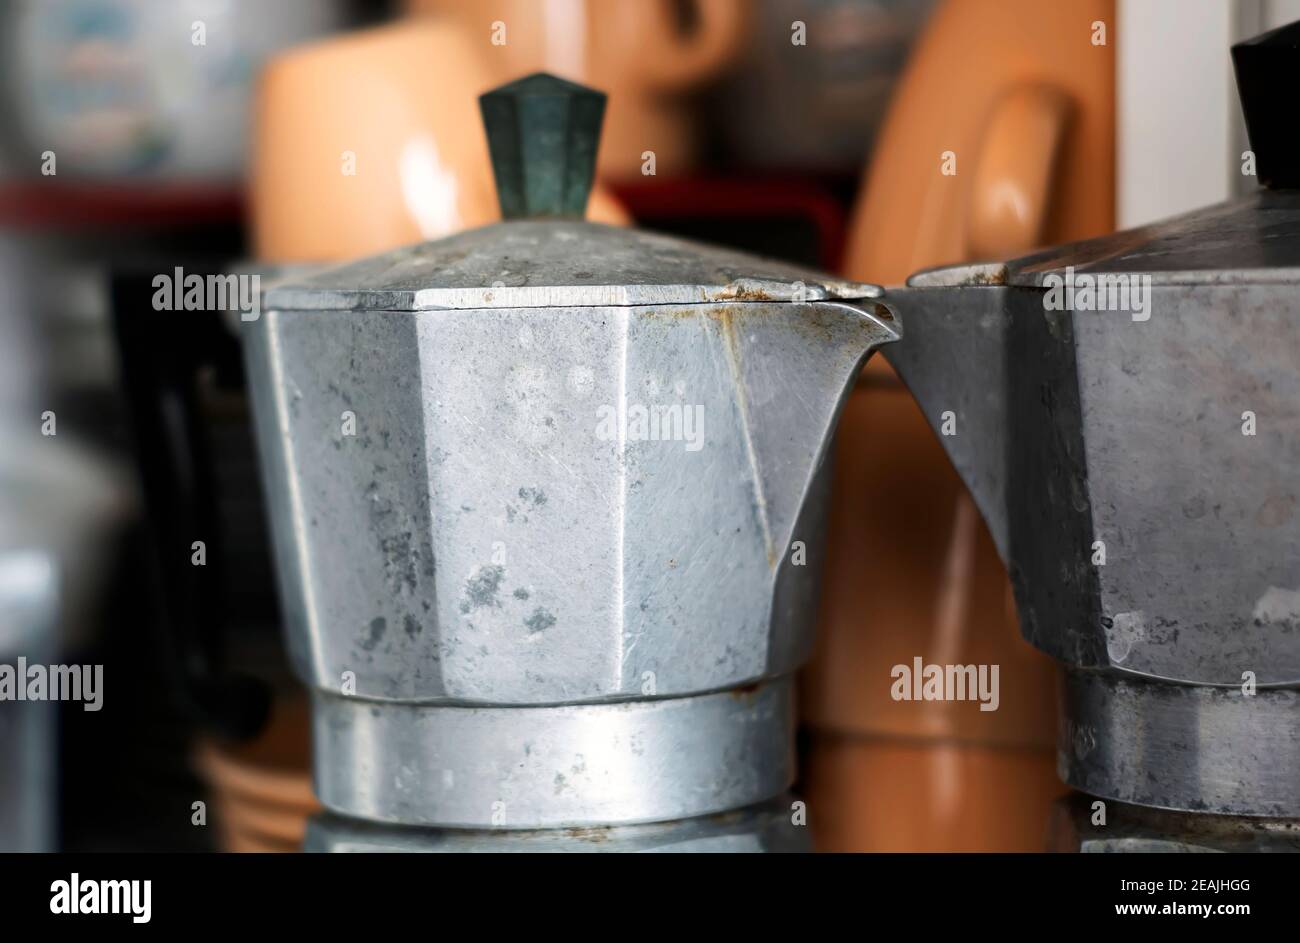 Turkish Coffee Pot Coffee Maker Moka Pot Patterned Cast Iron